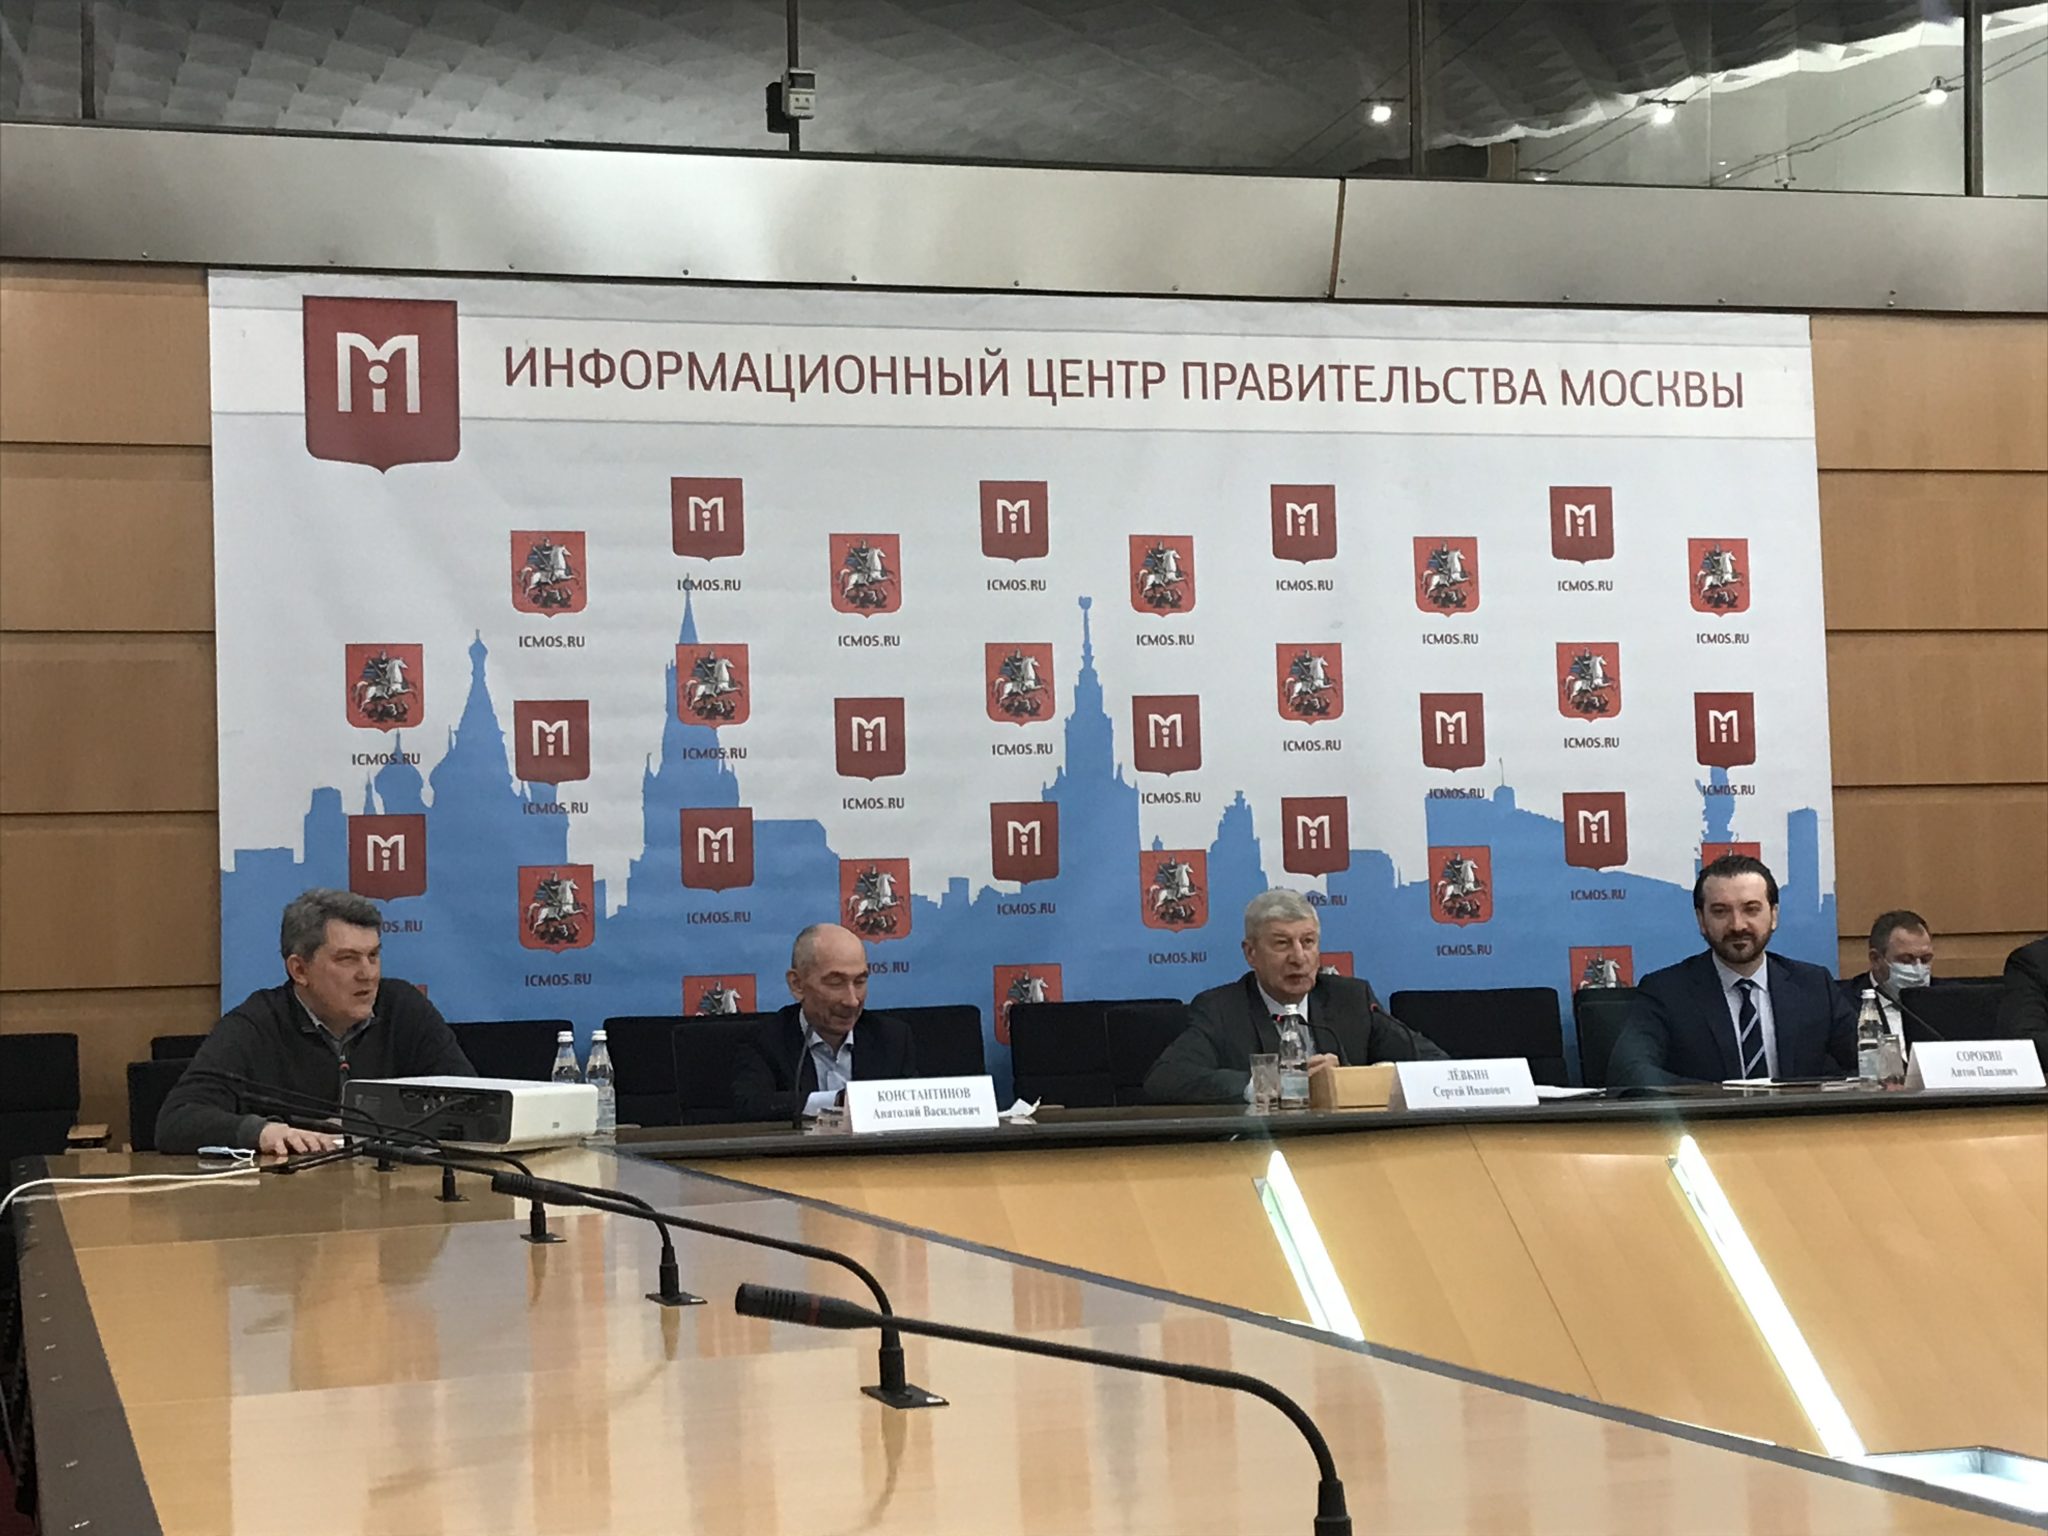 Этапы и сроки переселения по программе реновации обсудили на пресс-конференции в Информационном центре Правительства Москвы